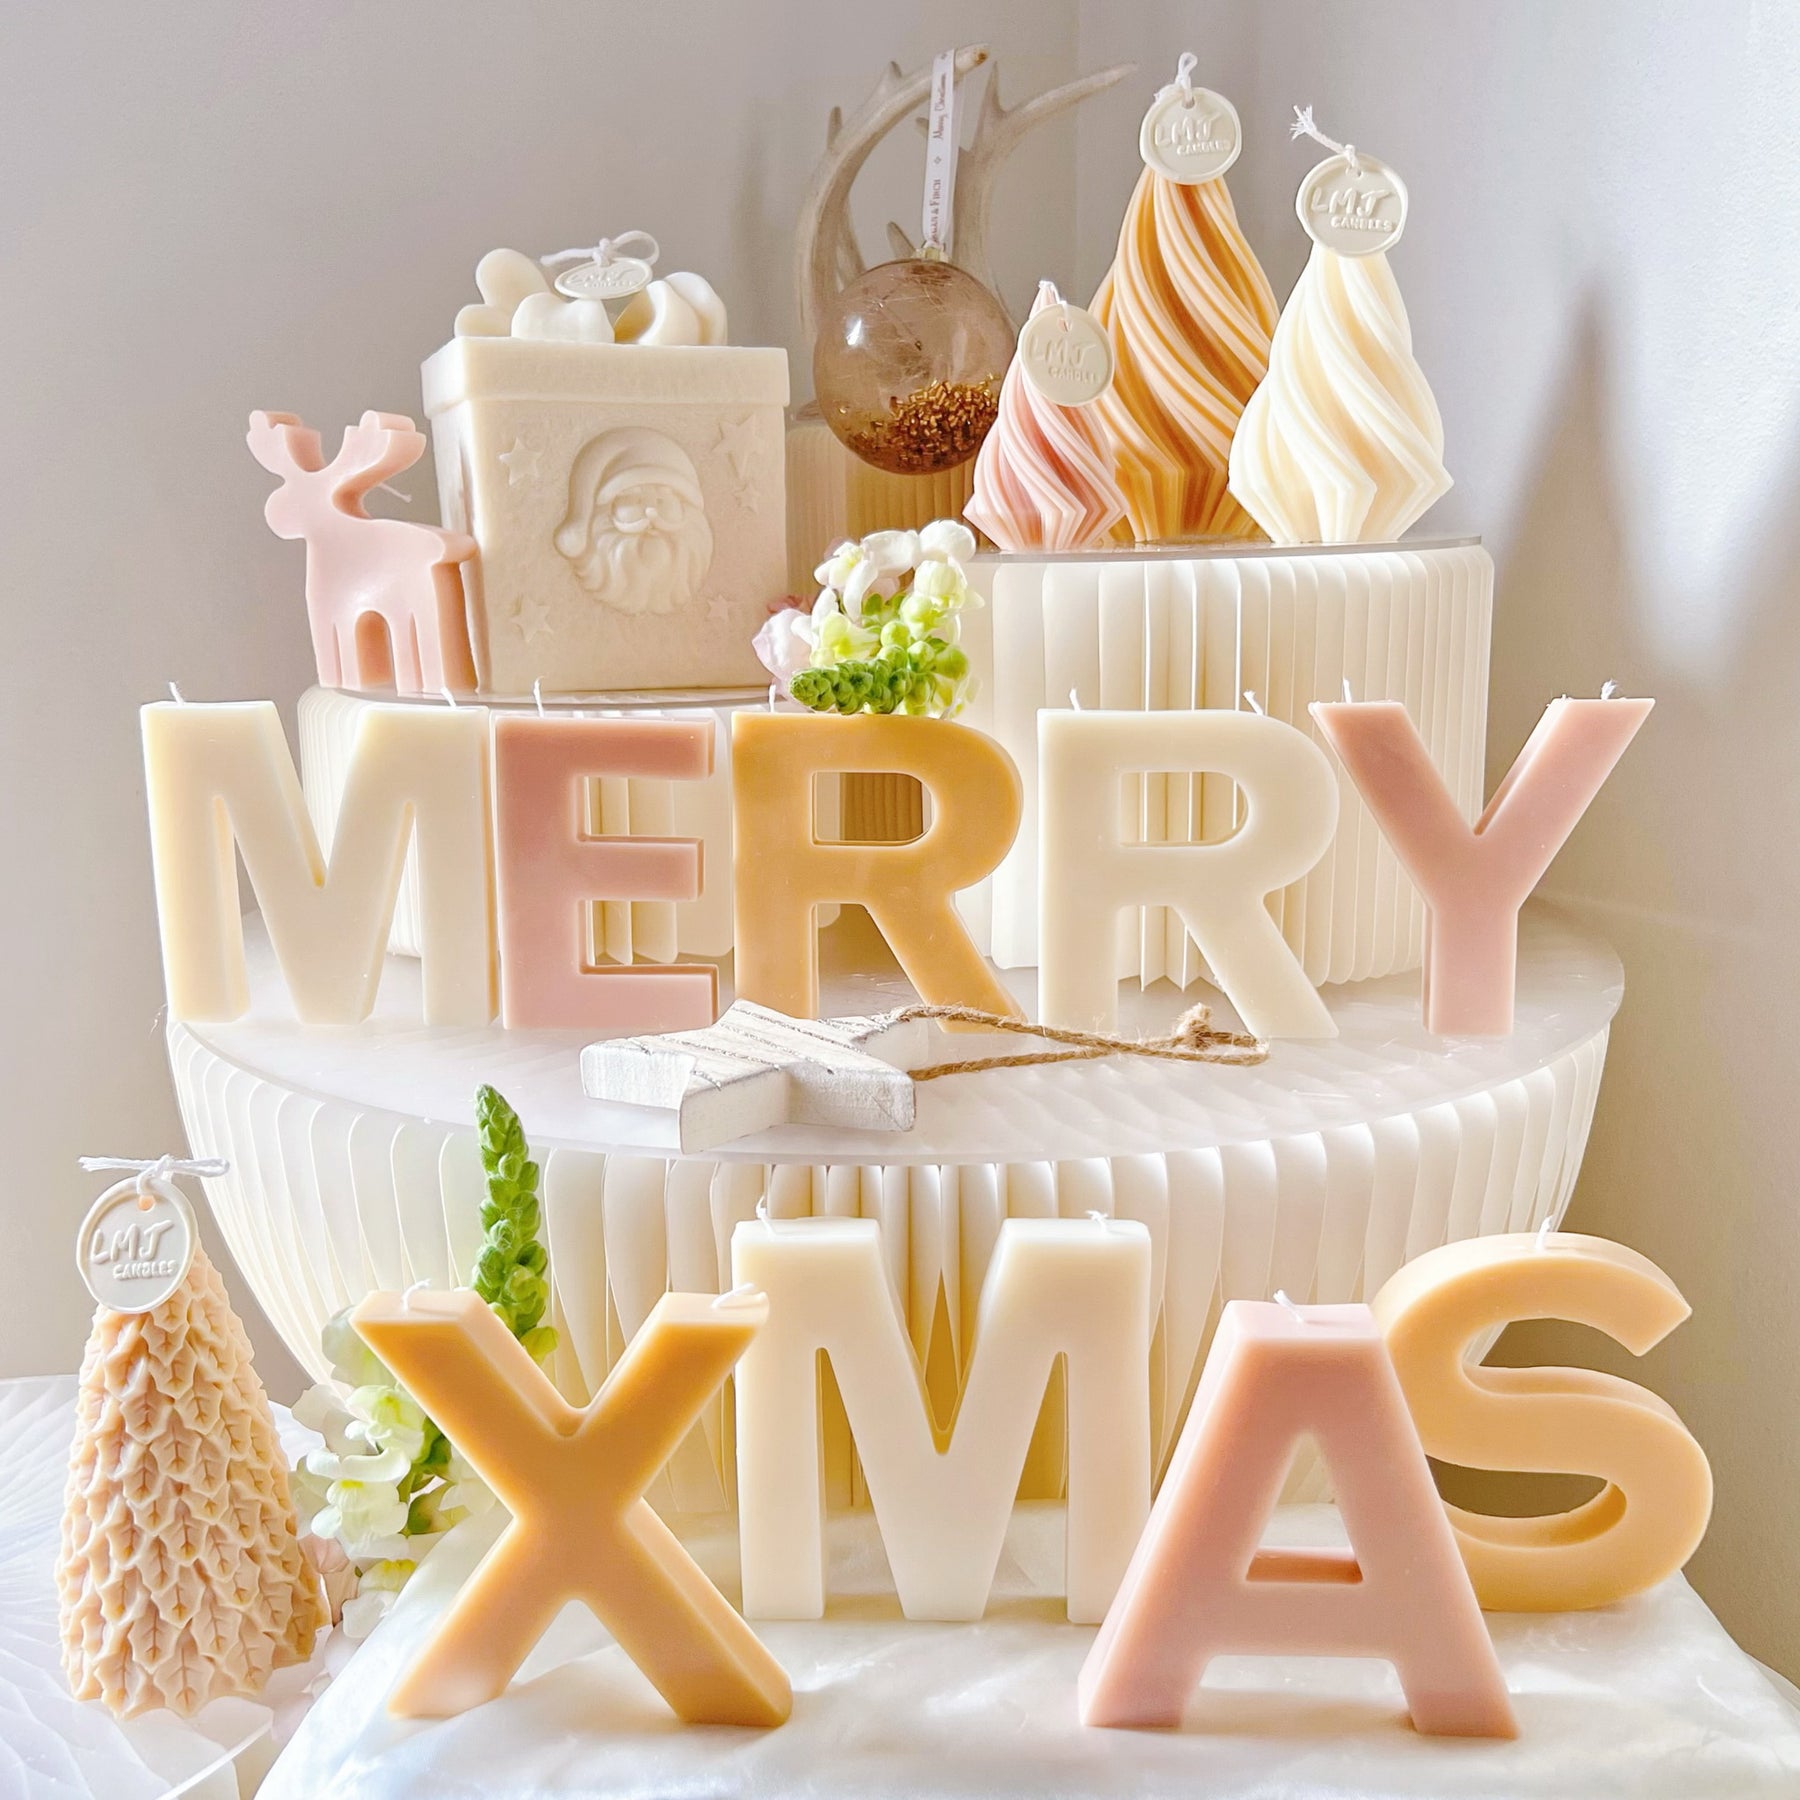 Christmas Collection | Handmade Xmas Gifts - LMJ Candles